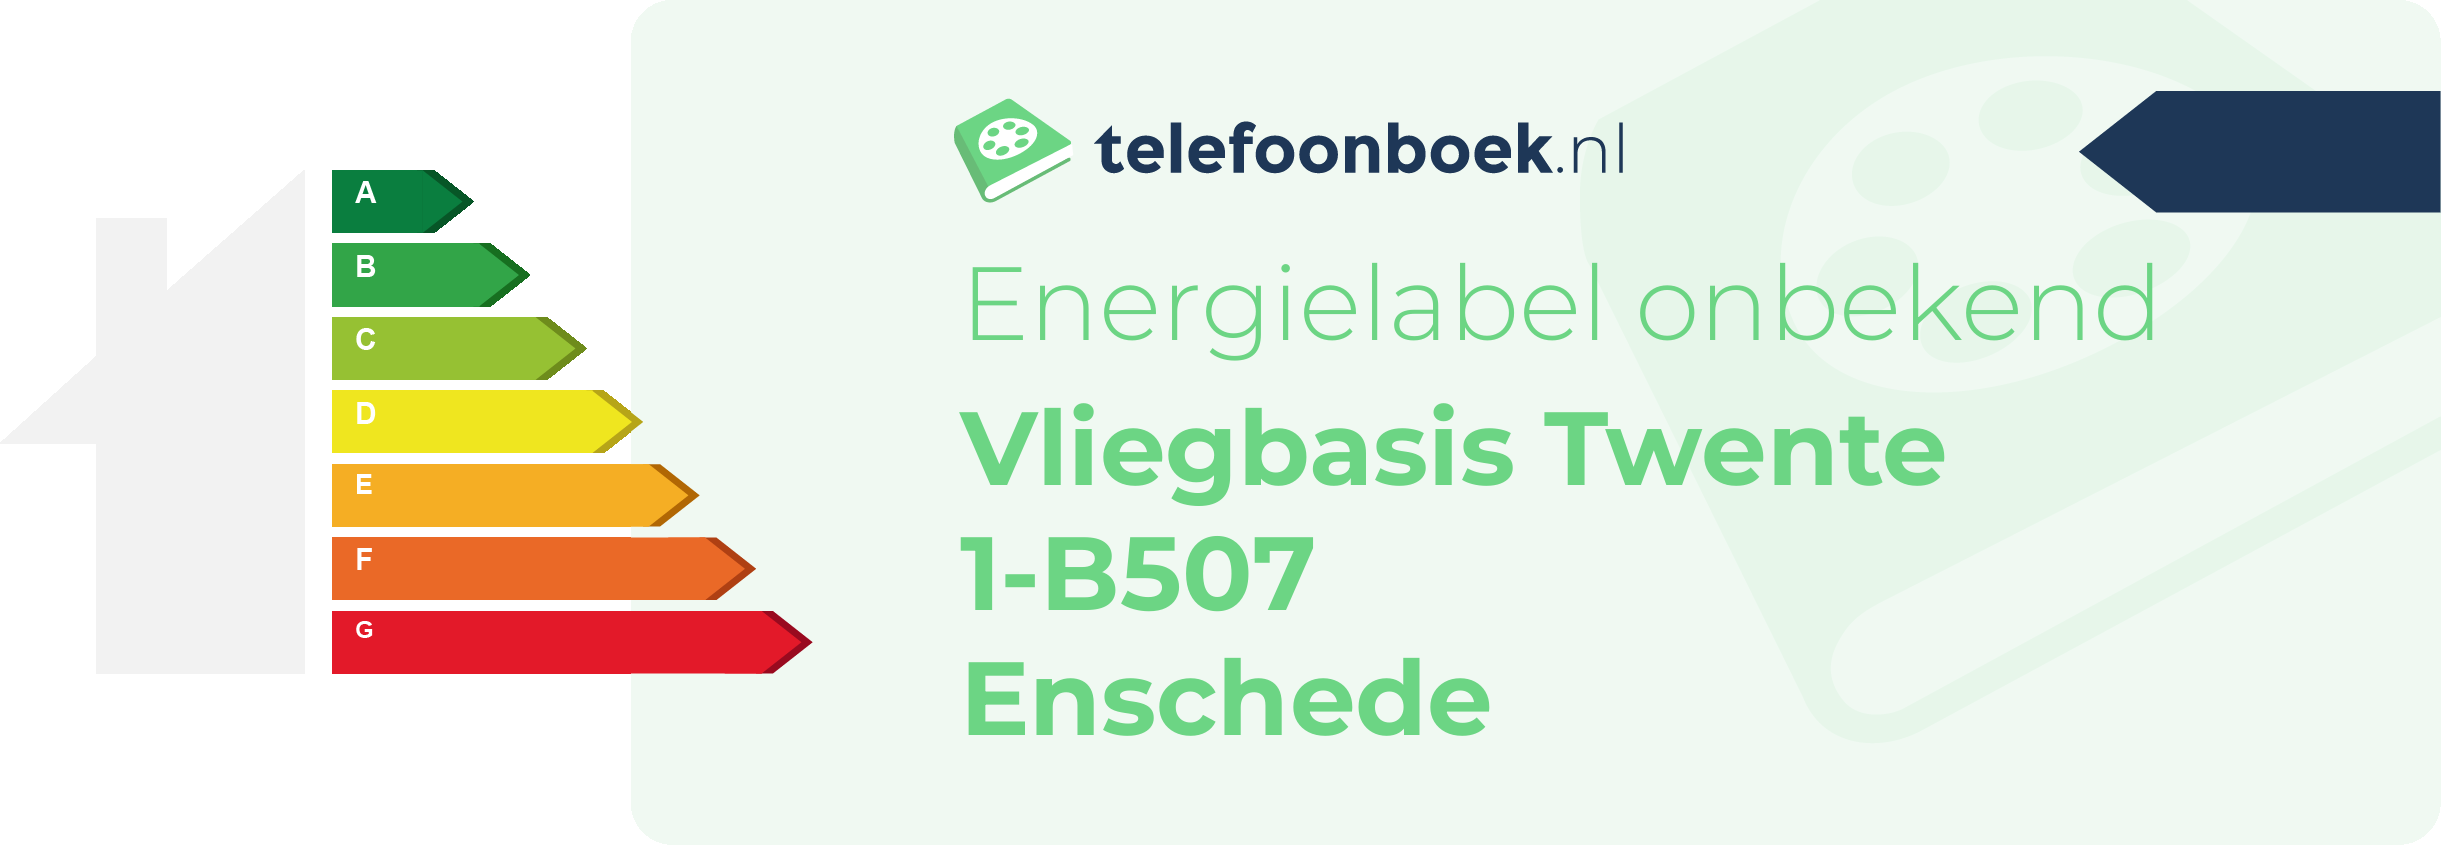 Energielabel Vliegbasis Twente 1-B507 Enschede